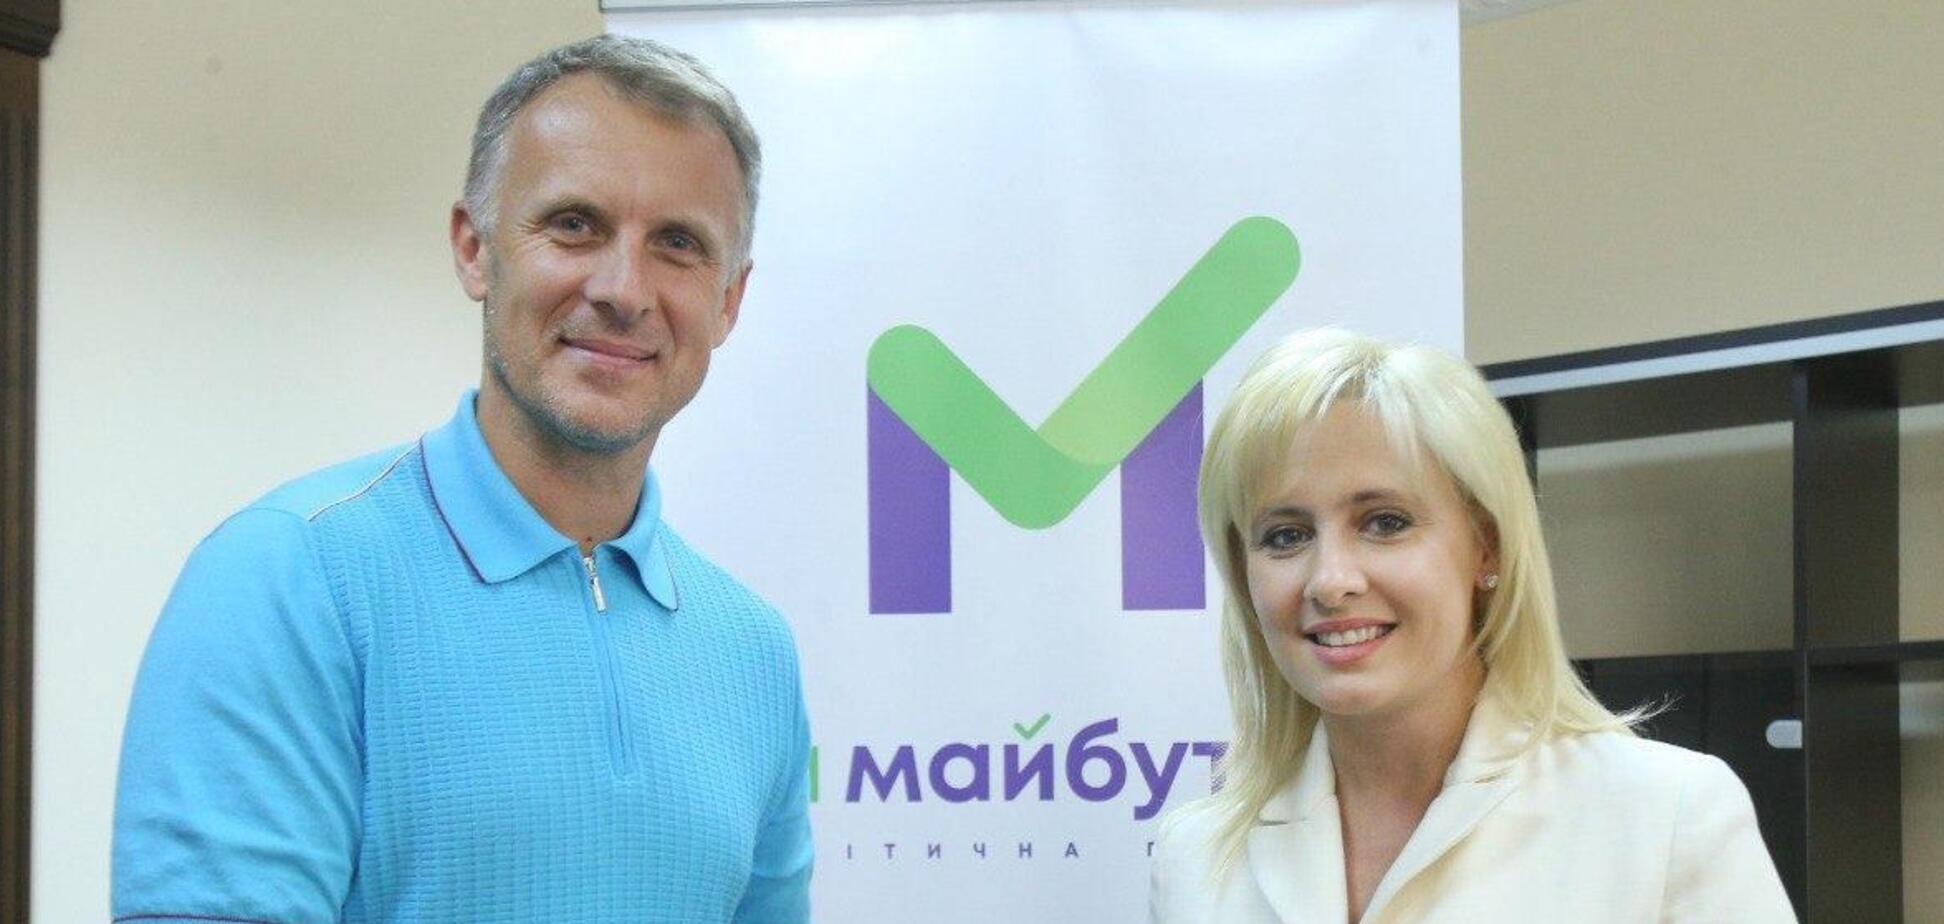 'За Майбутнє' и Аграрная партия объединили избирательные штабы перед местными выборами